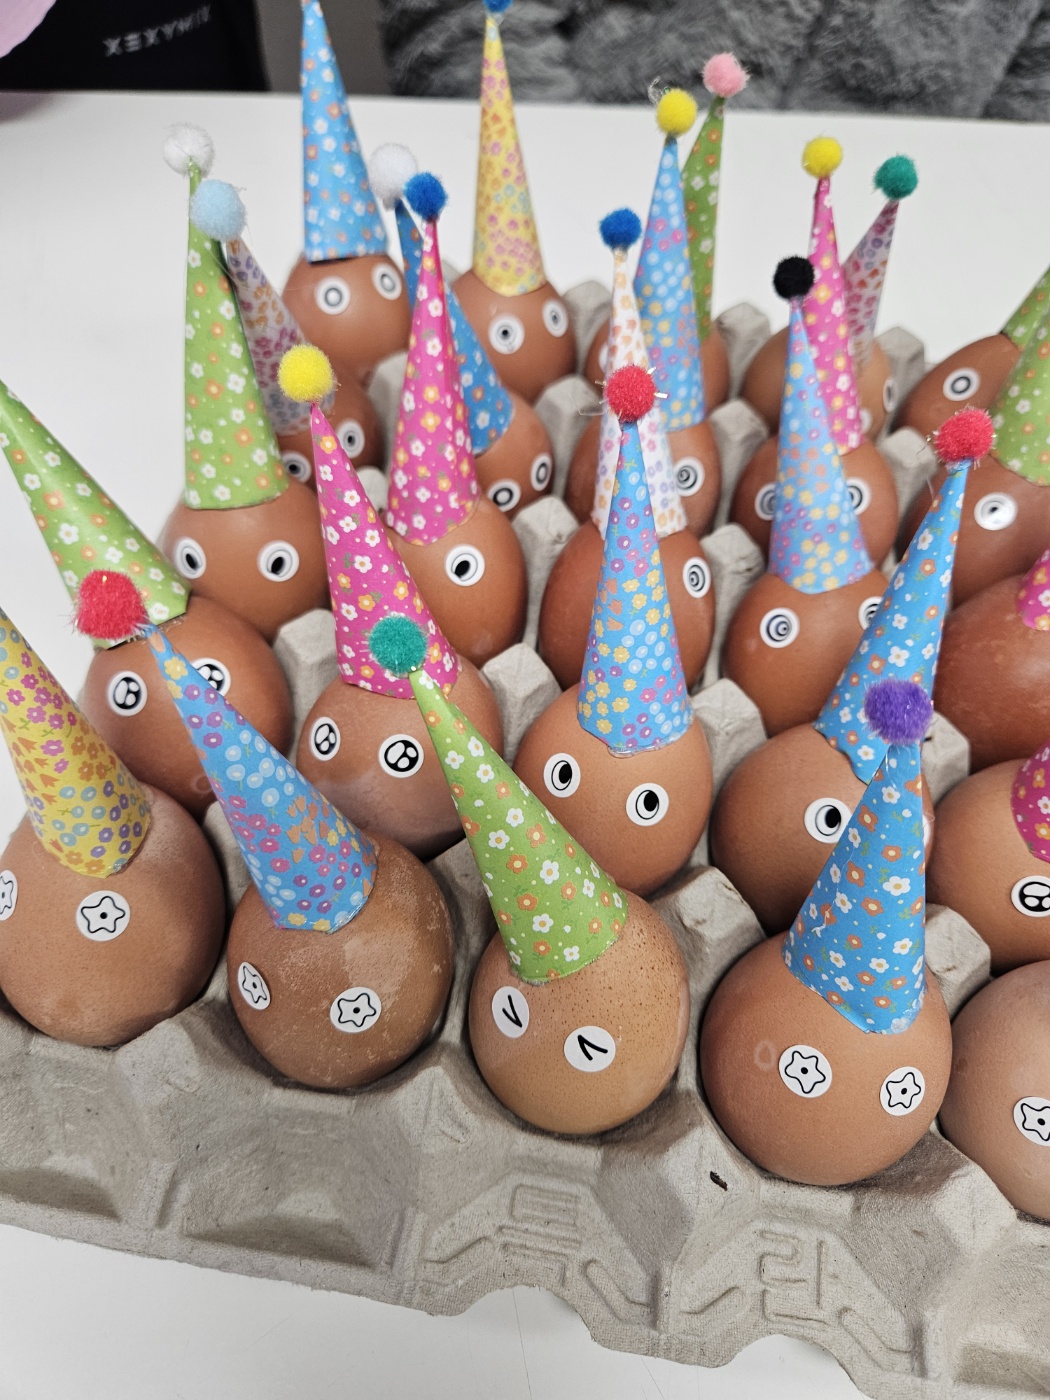 삶은 달걀에 고깔을 붙이고 다양한 모양의 눈 스티커를 붙여 꾸민 달걀을 찍은 사진입니다. 